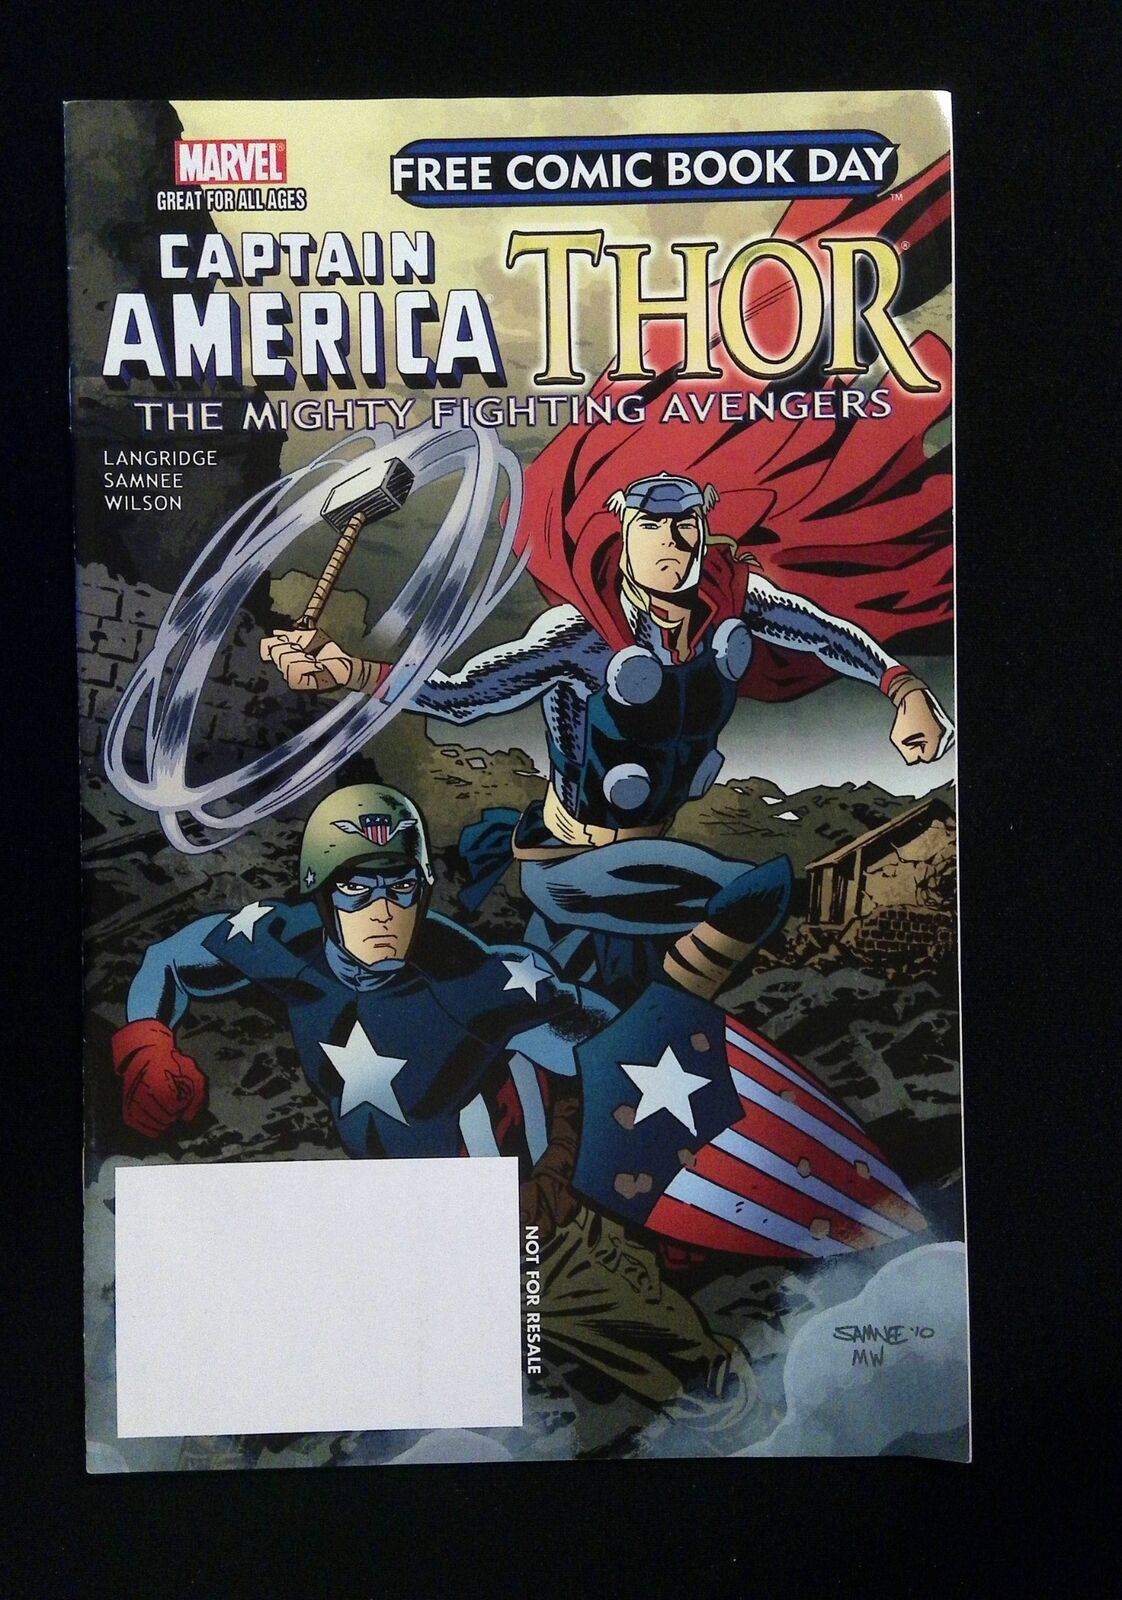 Captain America Thor #0  Marvel Comics 2011 Vf+  Fcbd